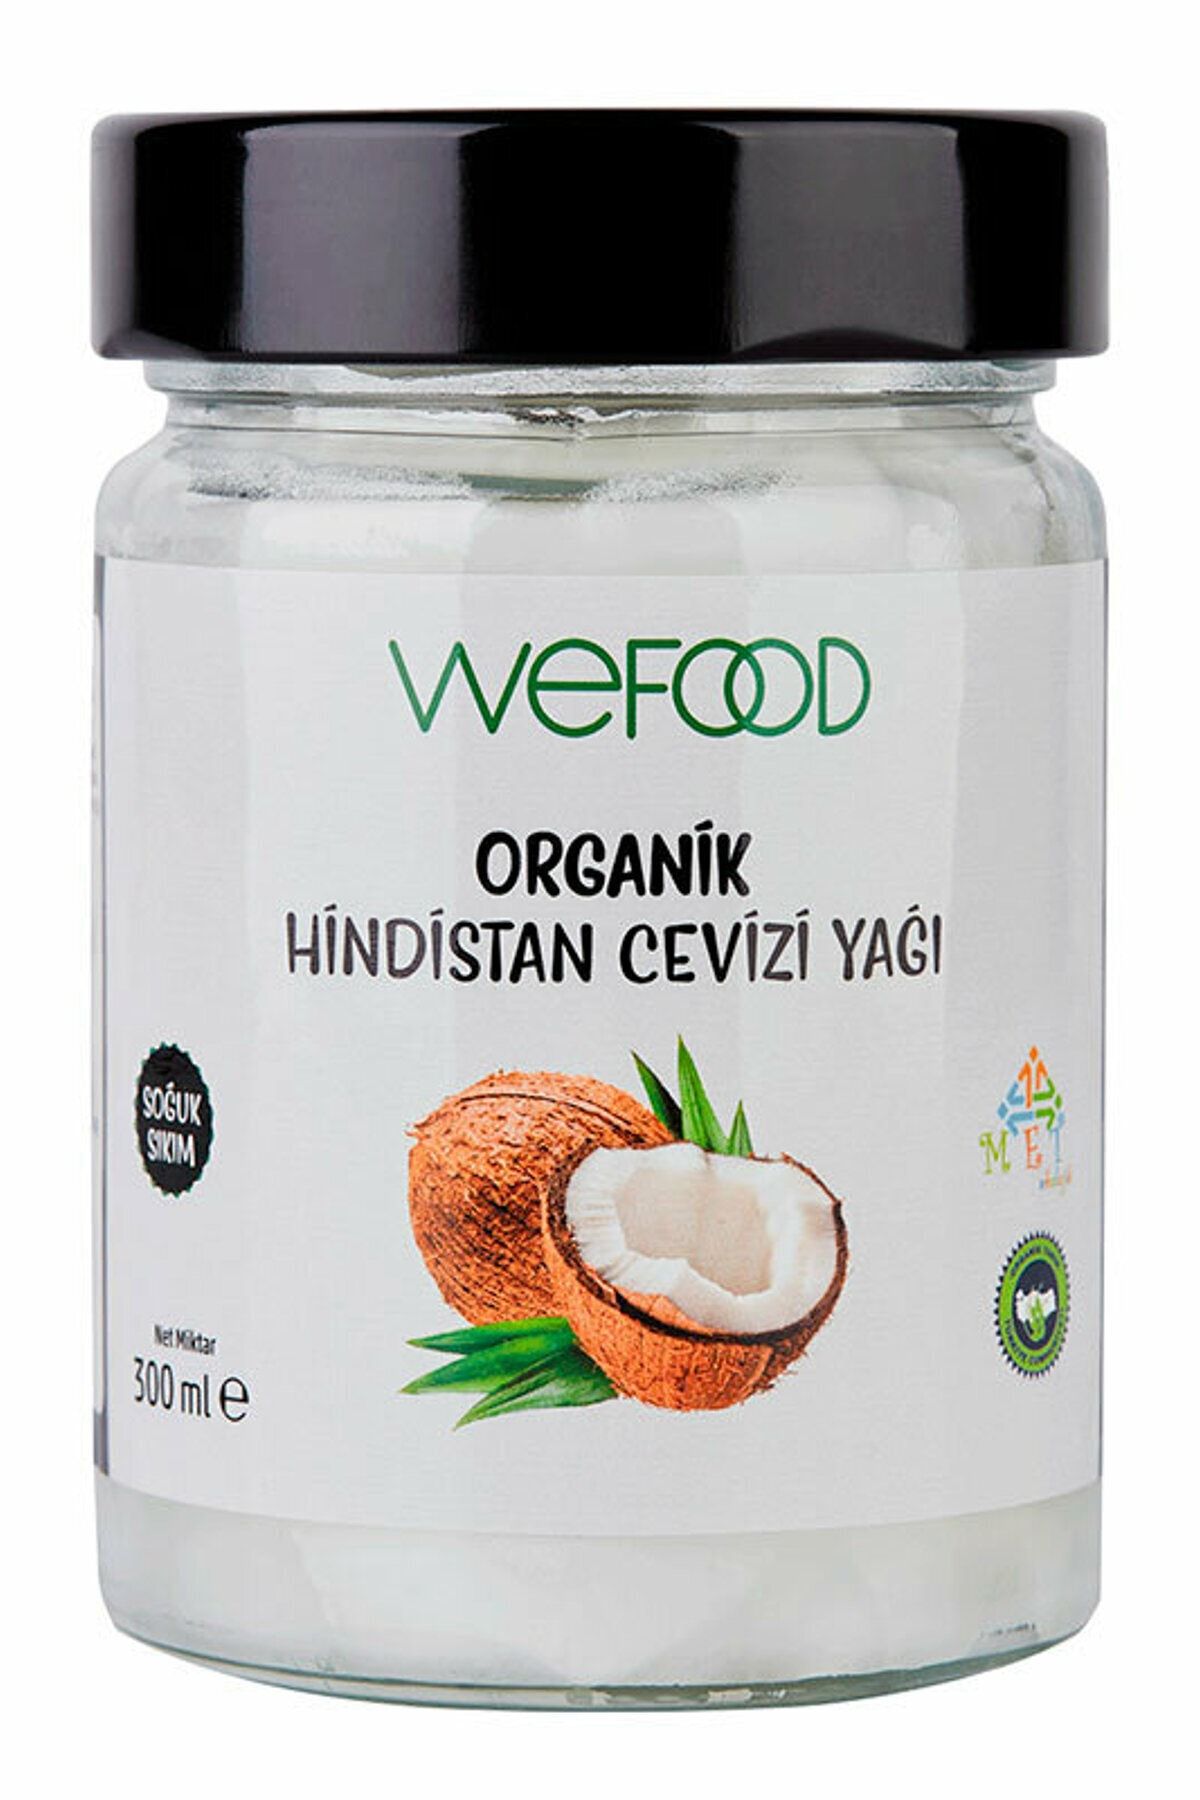 Wefood Organik Hindistan Cevizi Yağı 300 ml